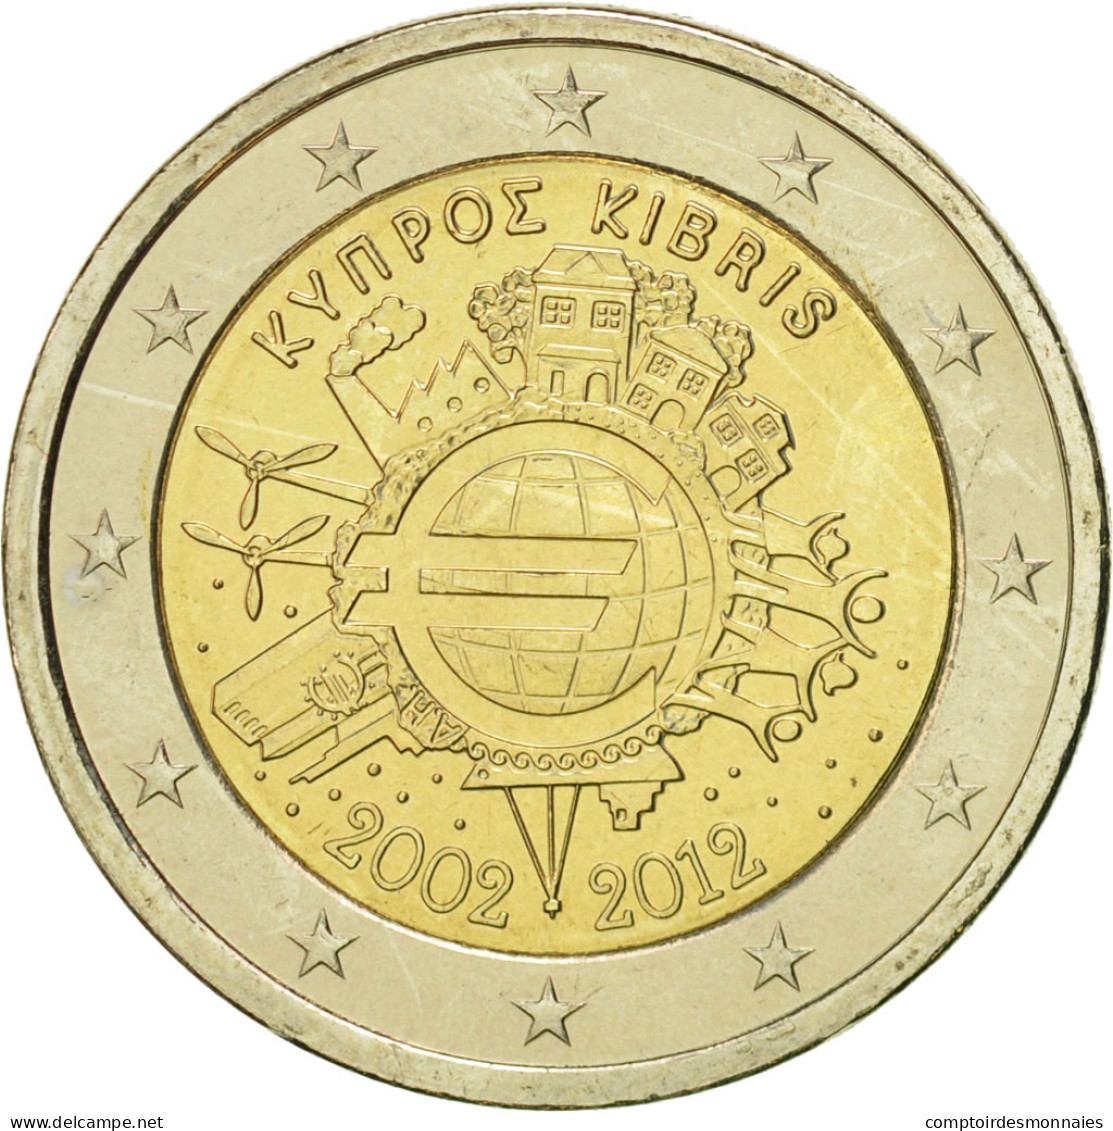 Chypre, 2 Euro, 10 Ans De L'Euro, 2012, SUP+, Bi-Metallic - Cyprus